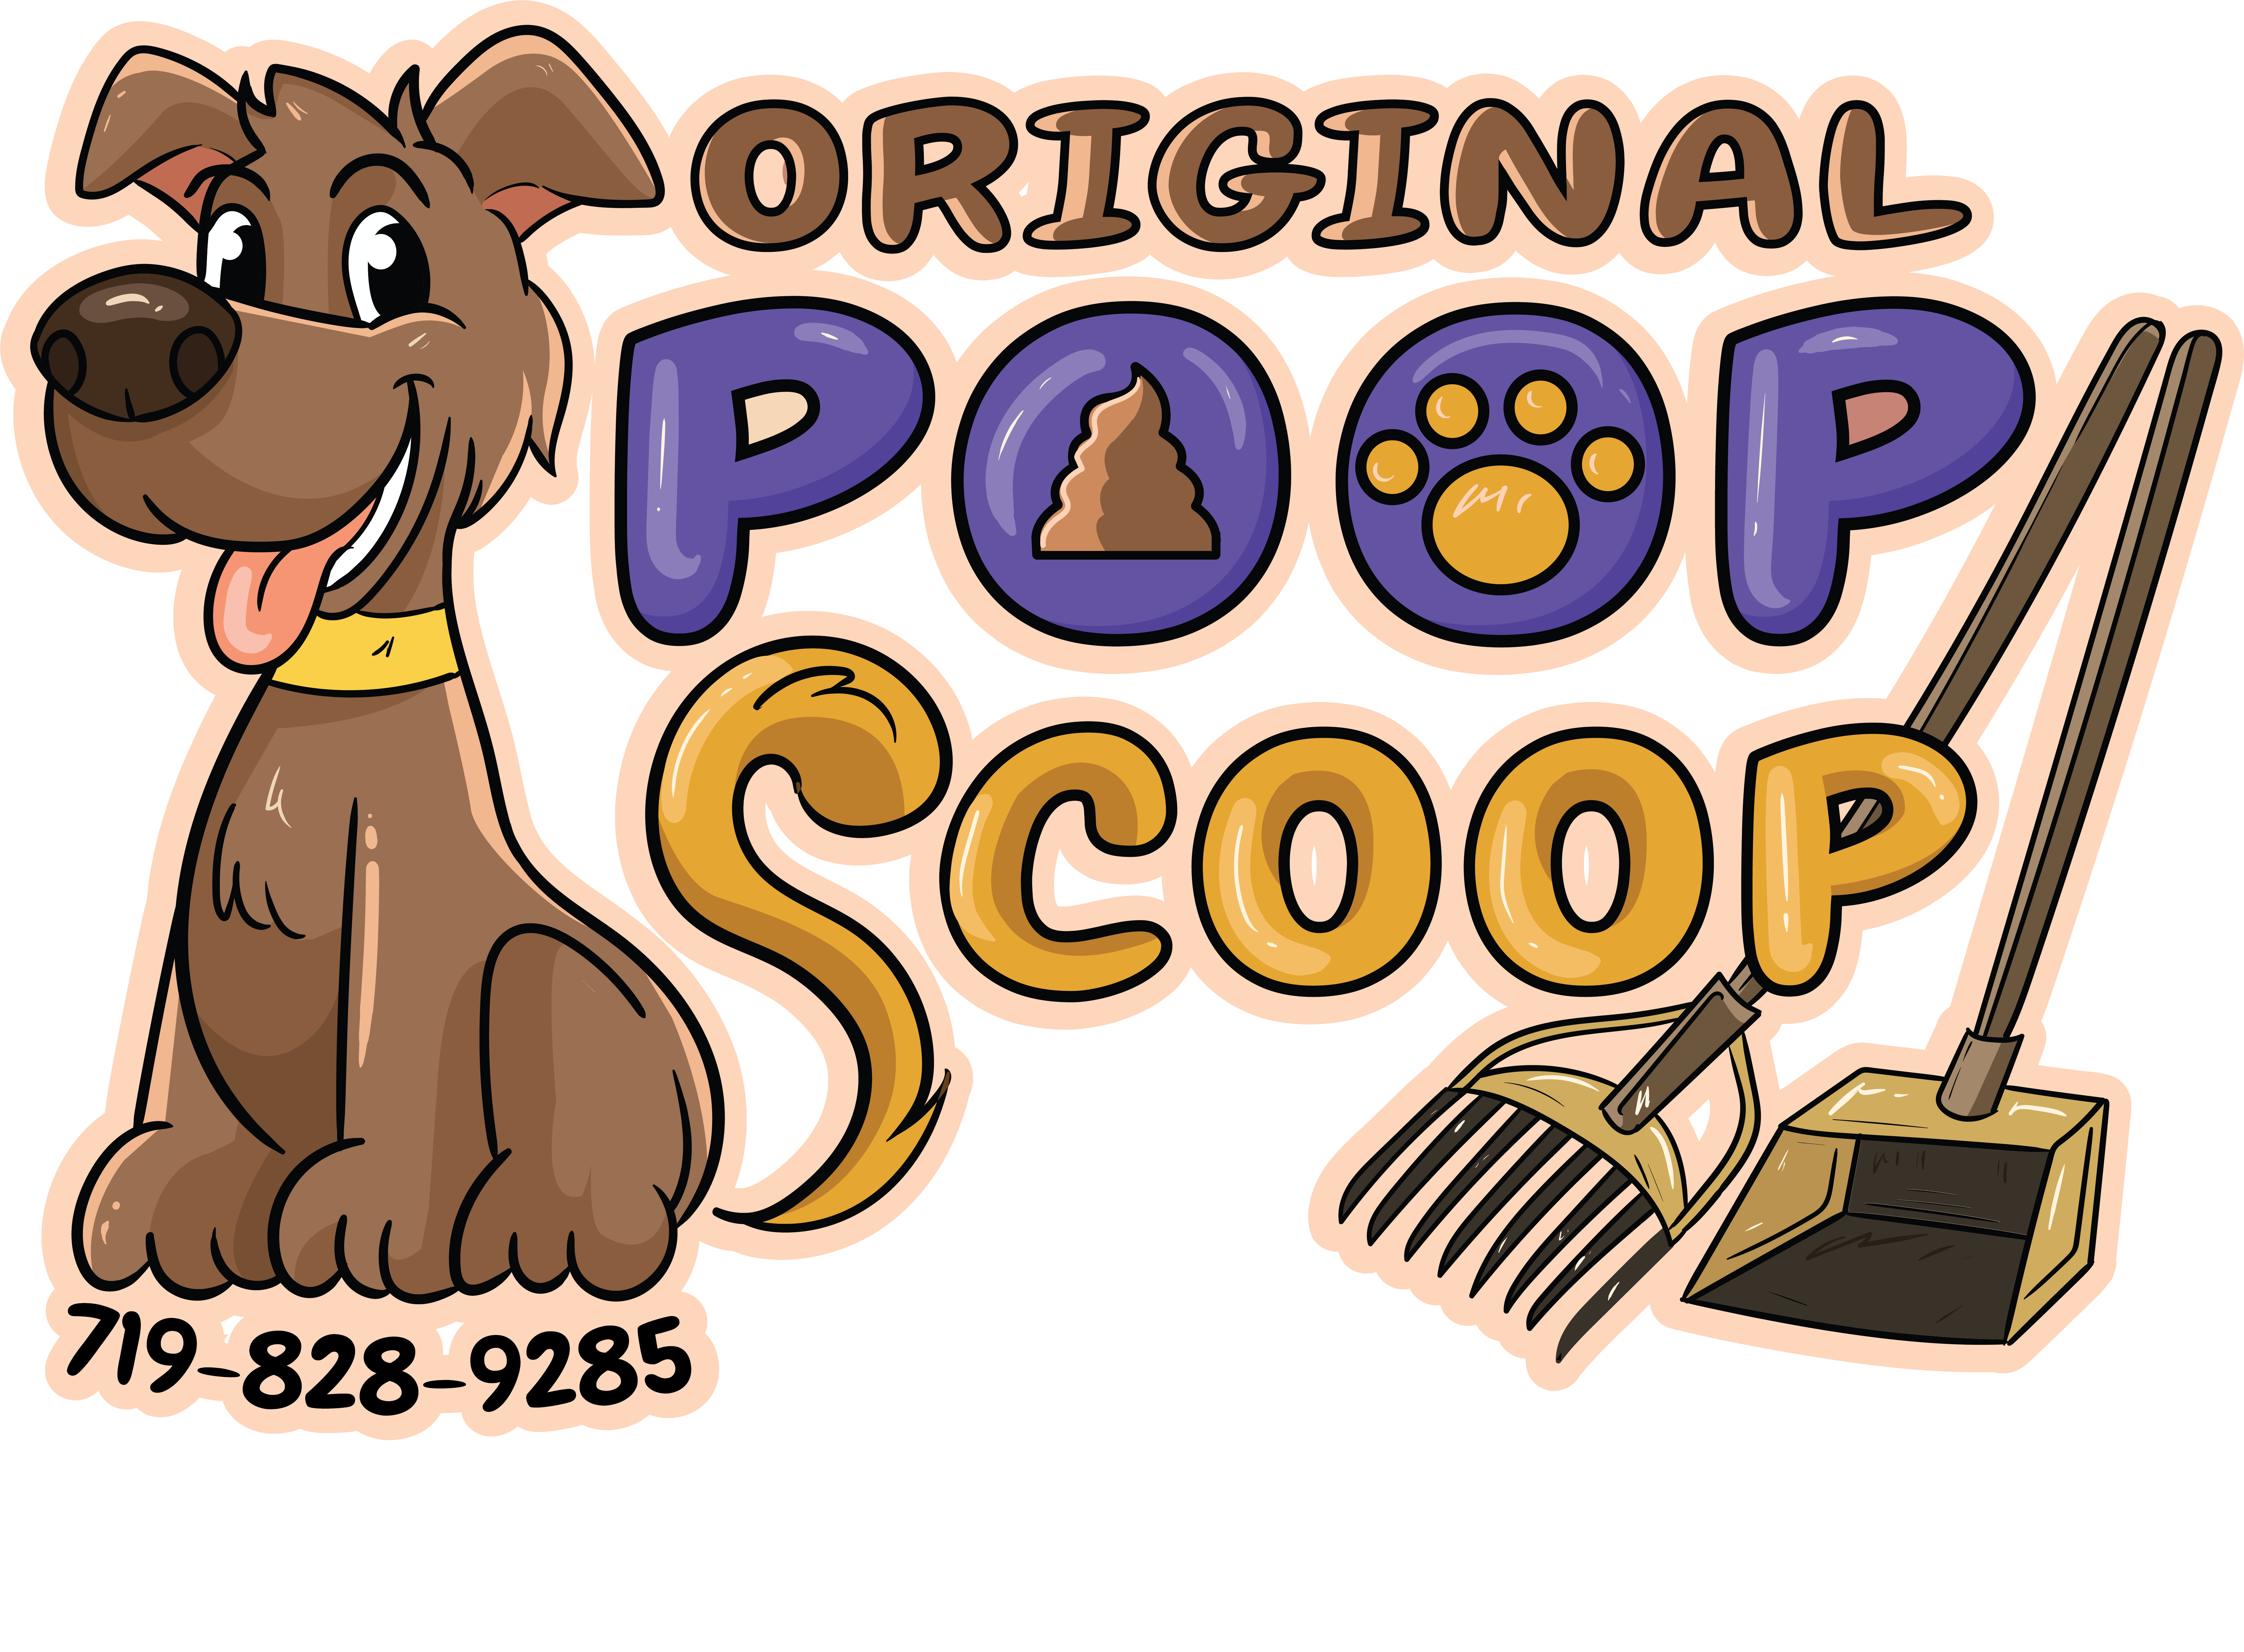 colorado springs poop scoop logo